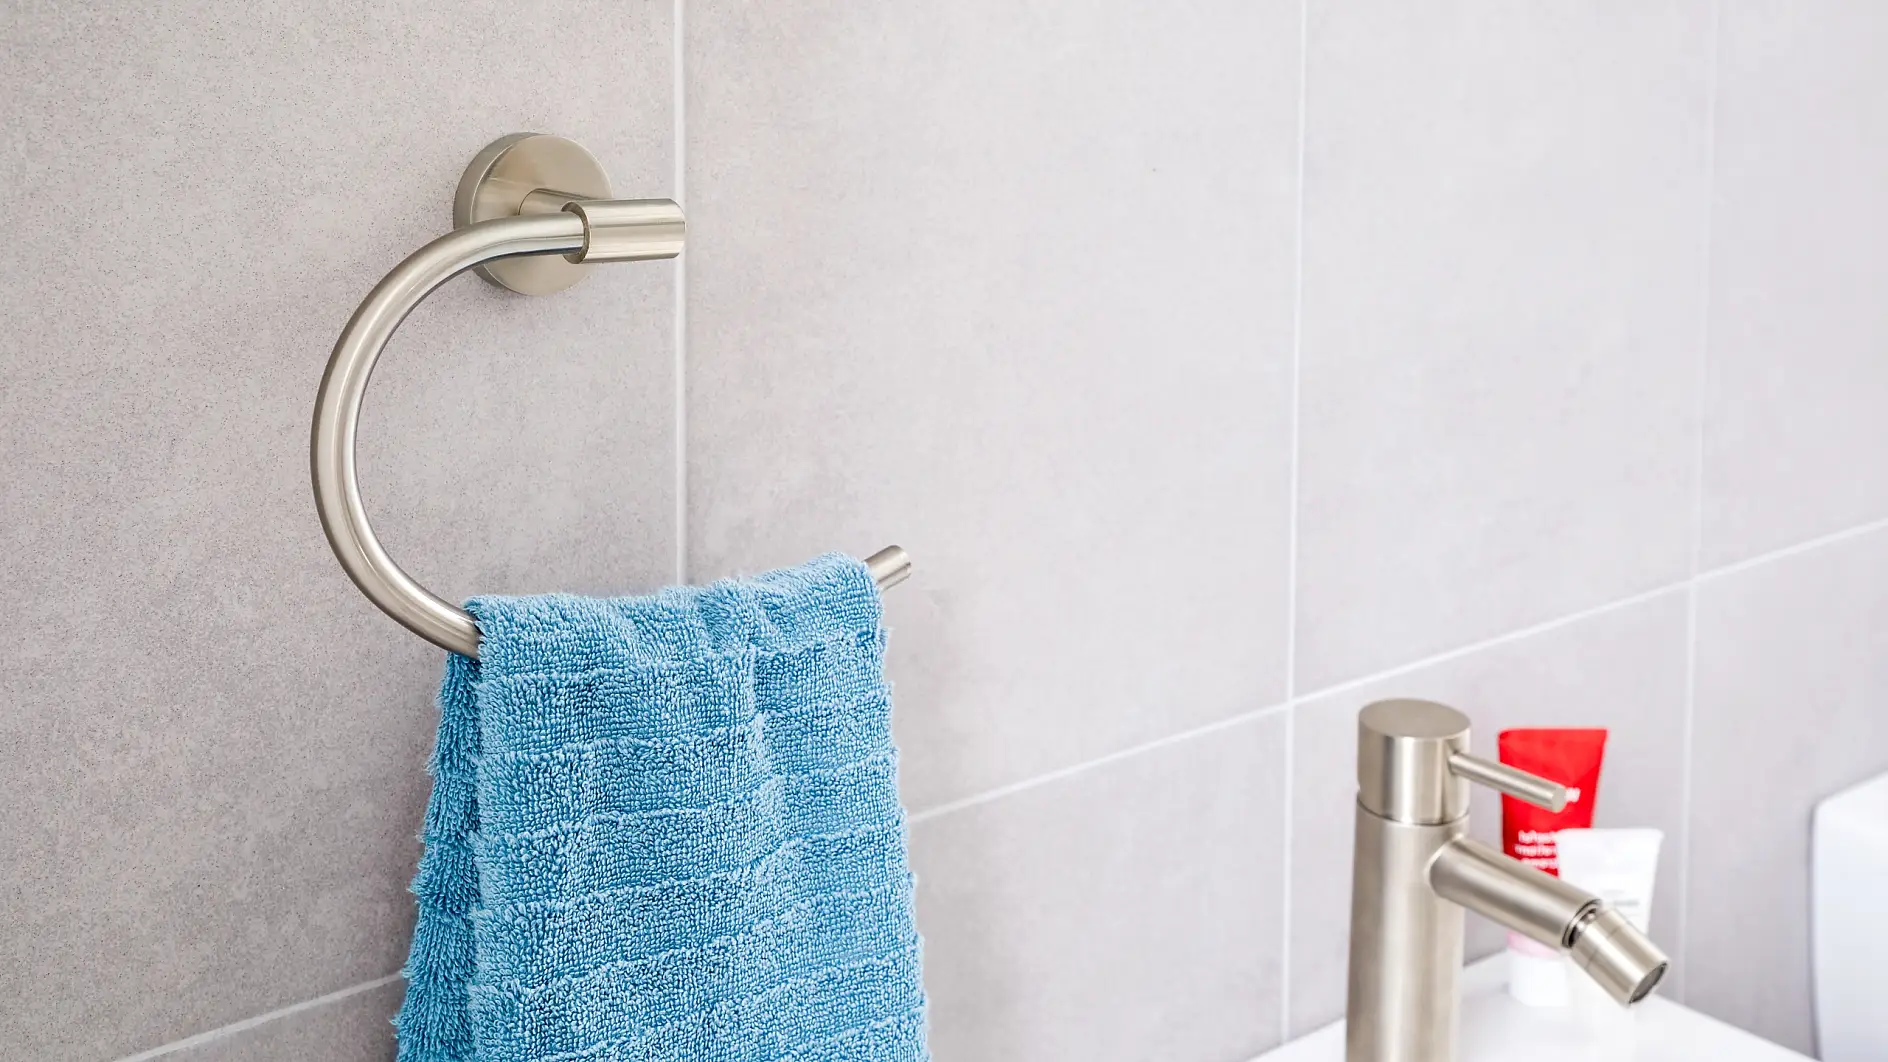 Il design raffinato incontra la praticità d’uso per riporre gli asciugamani vicino al lavandino.